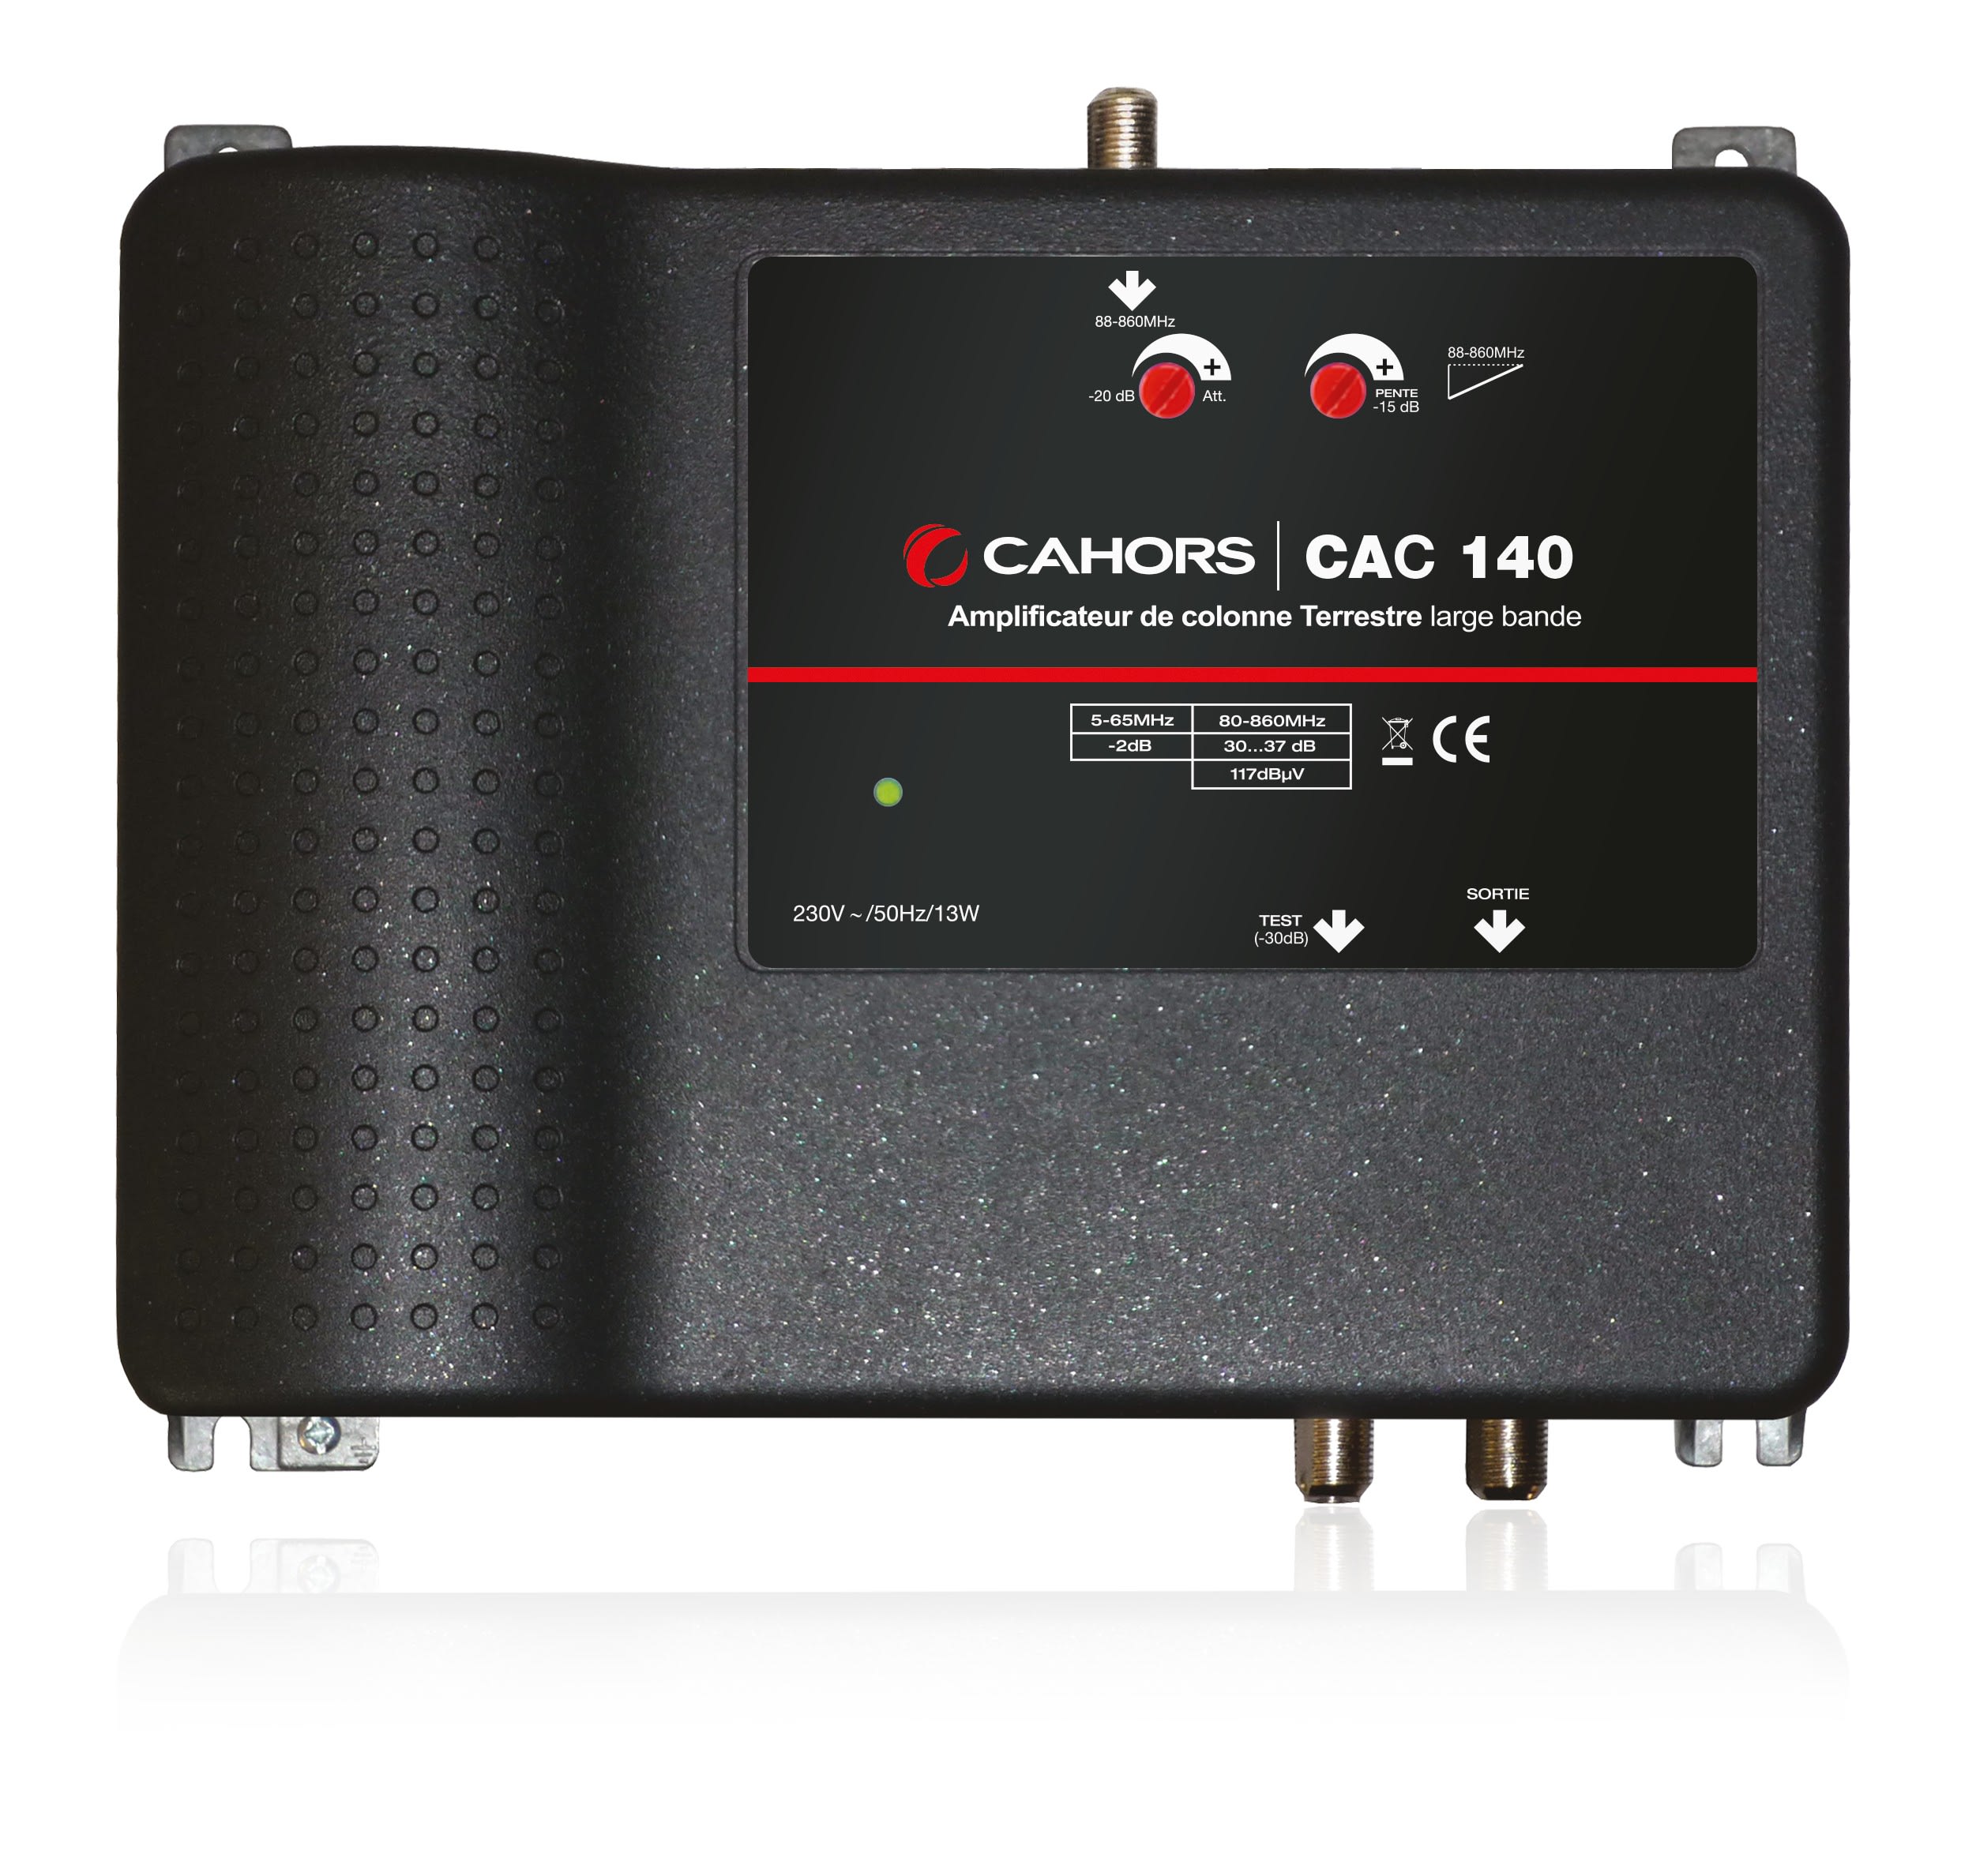 Cahors - Ampli C3 40Db + Pente 15Db Ns119Db